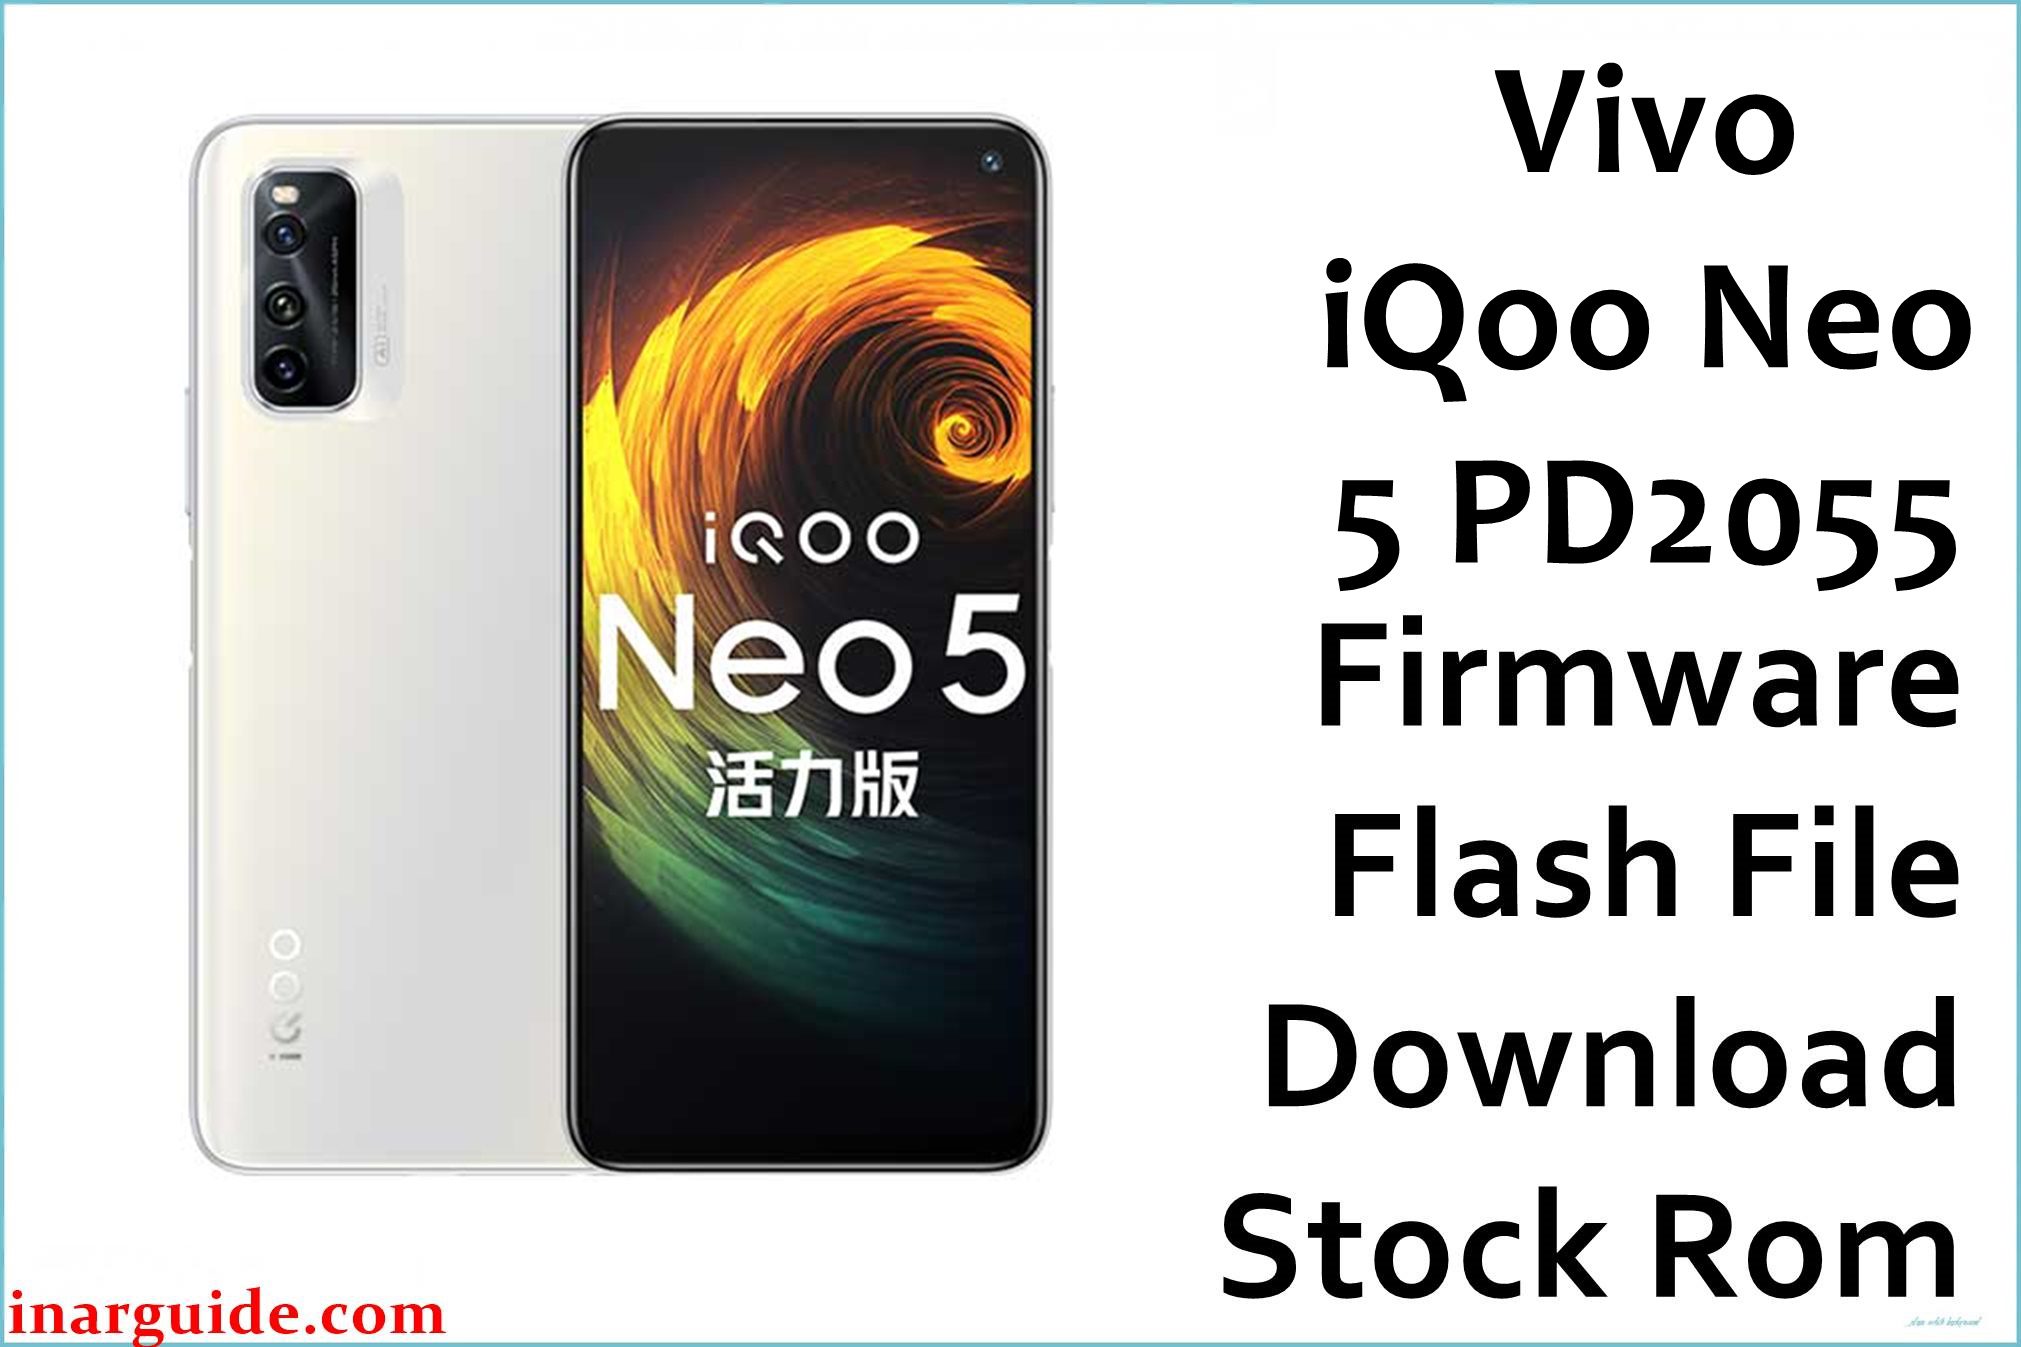 Vivo iQoo Neo 5 PD2055